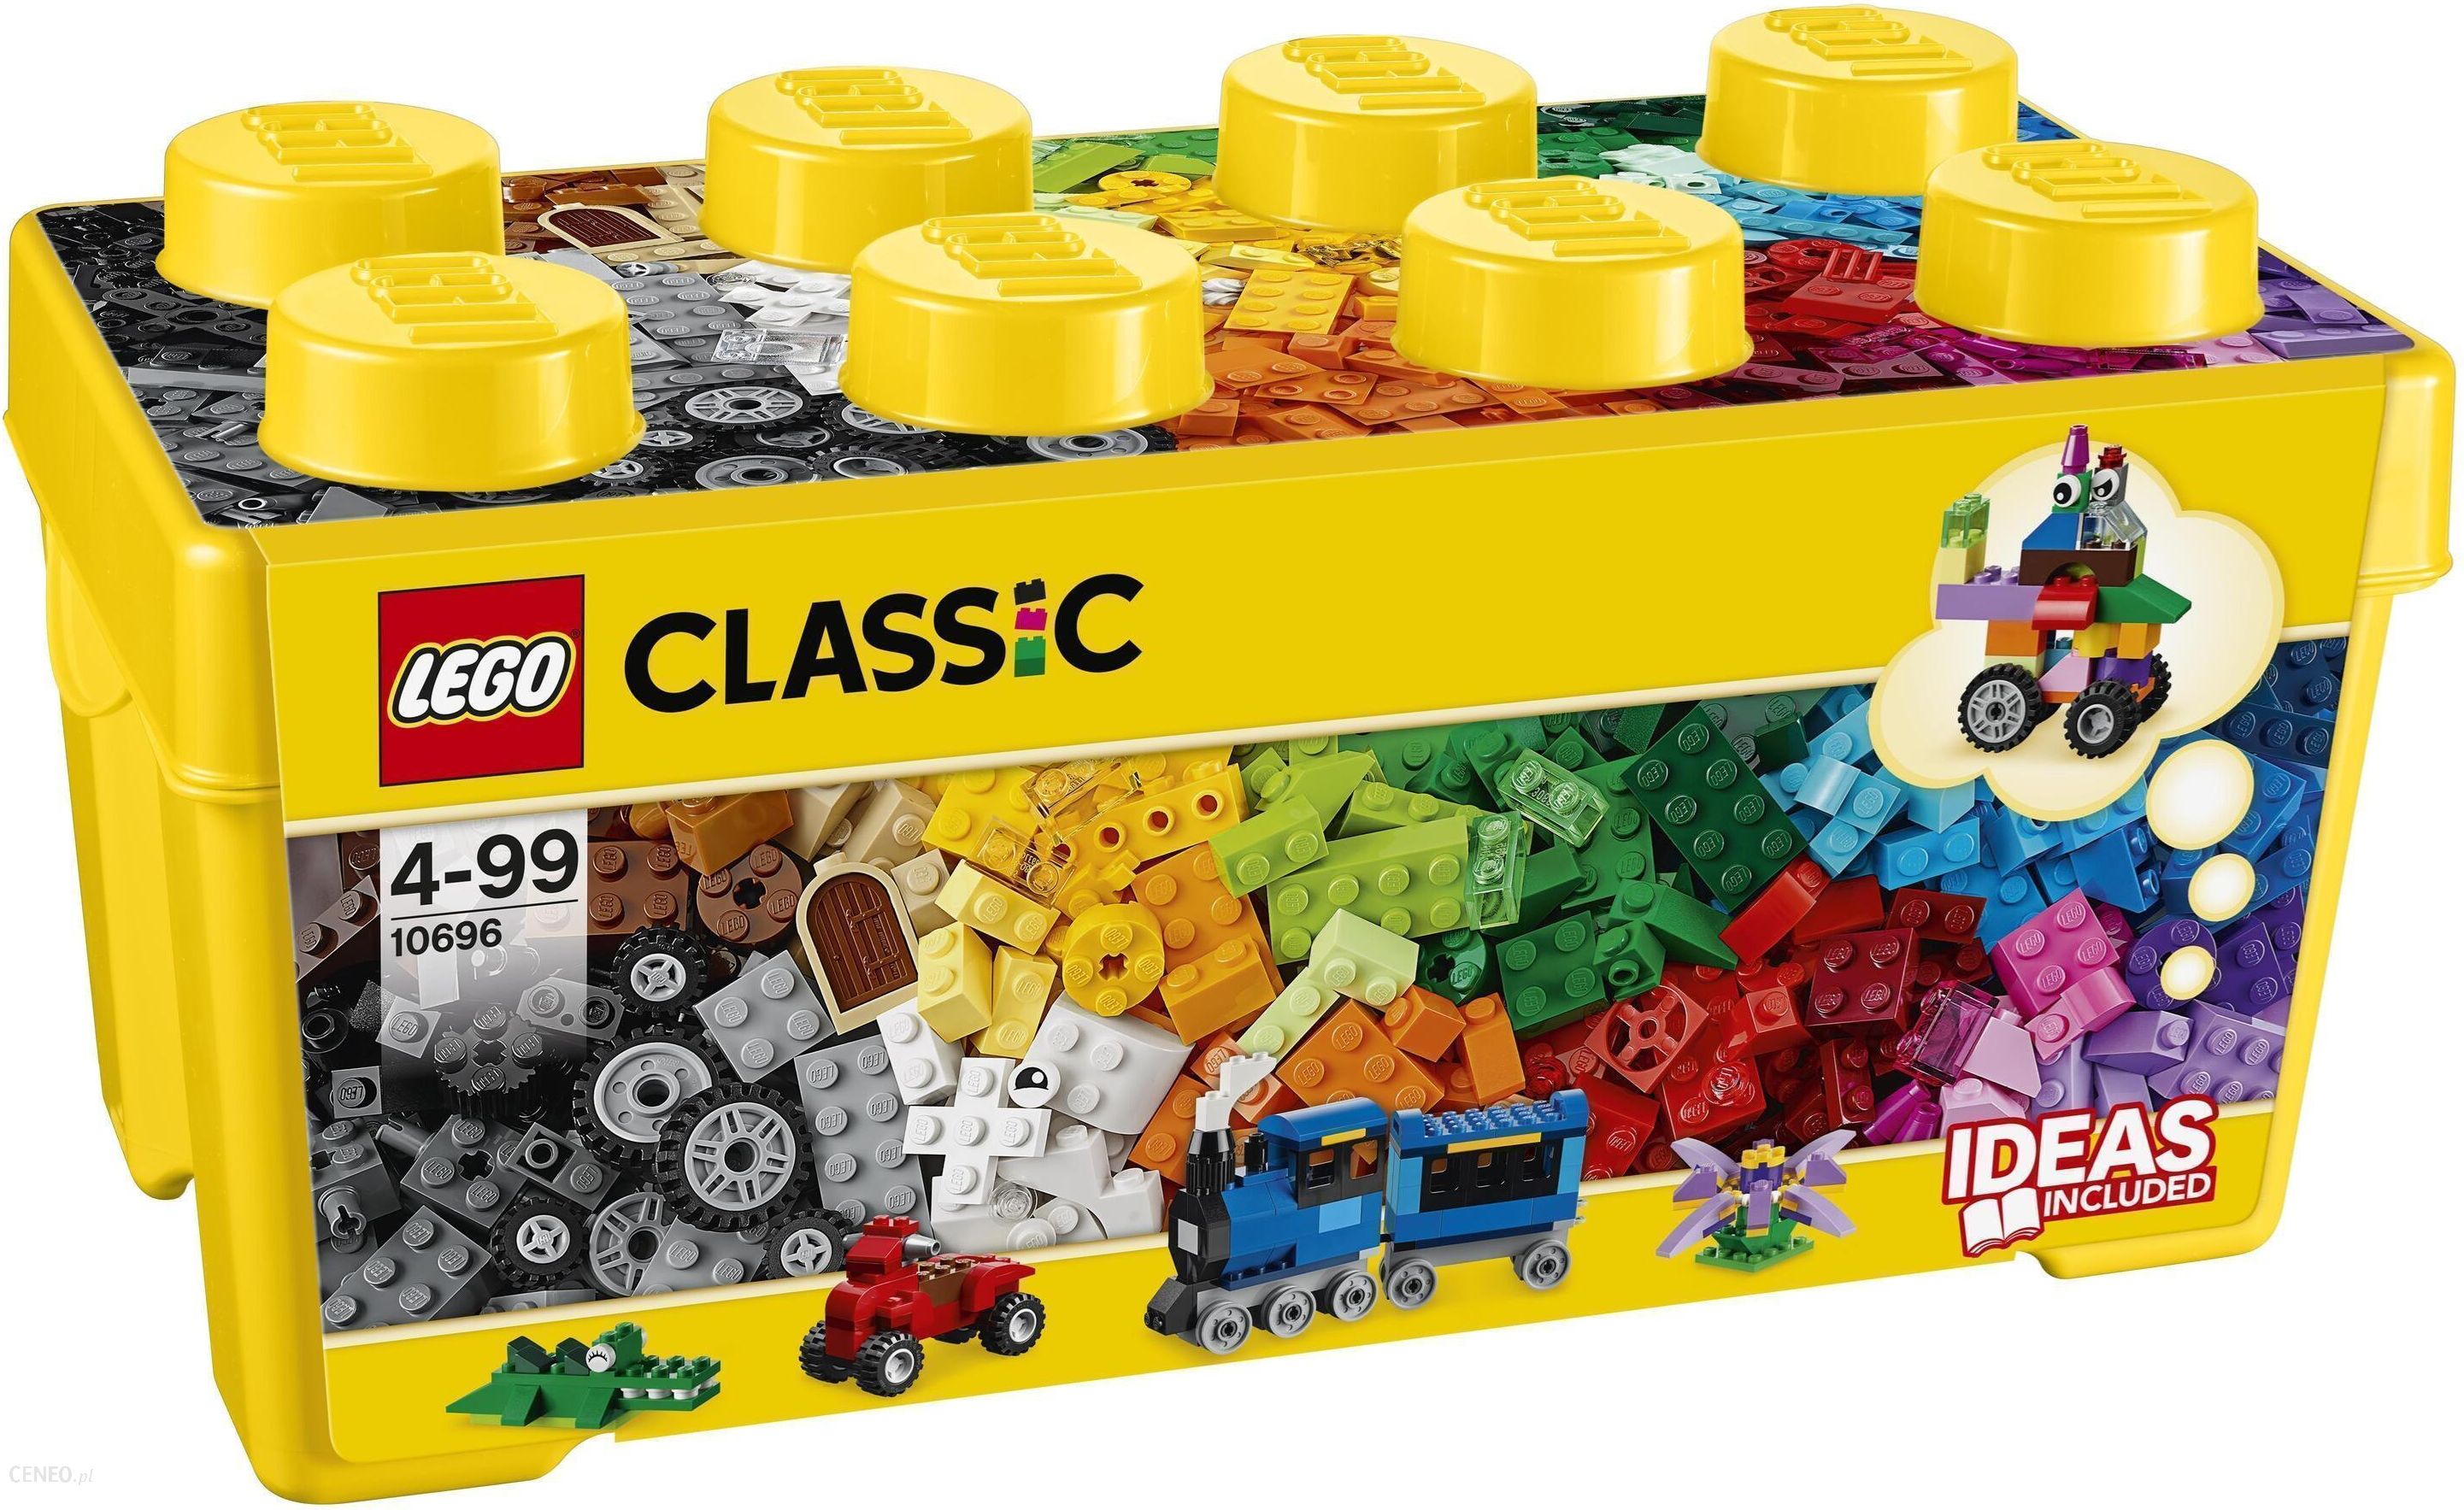 klinke Karakter krydstogt LEGO Classic 10696 Kreatywne klocki LEGO średnie pudełko - ceny i opinie -  Ceneo.pl